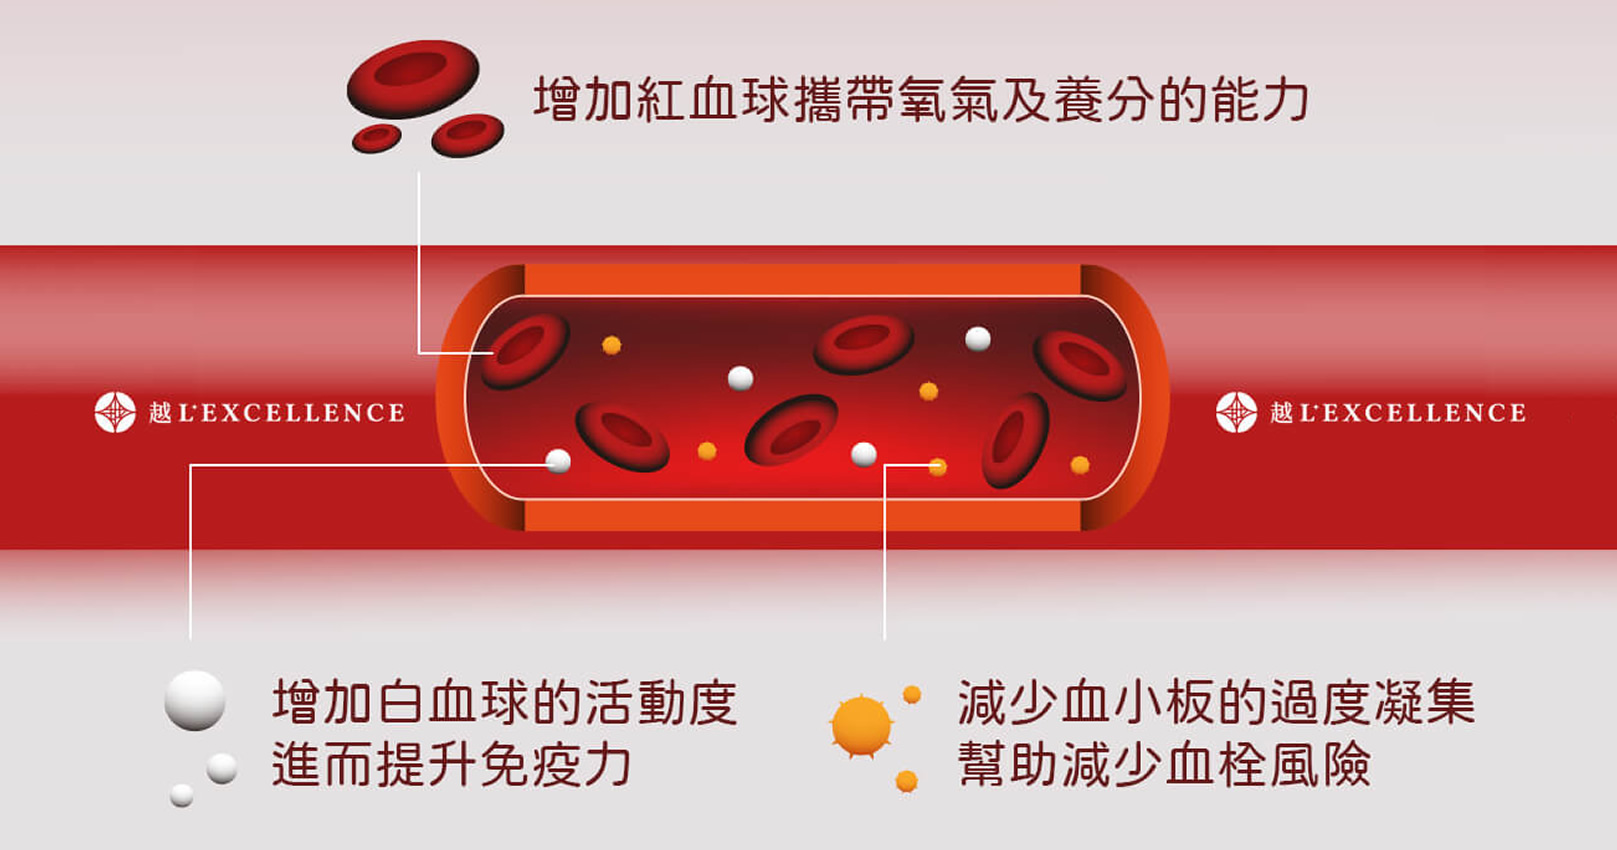 林書豪ILIB靜脈雷射。靜脈雷射優點、增加我們的紅血球攜帶氧氣及養分的能力、增加白血球的活動度，進而提升免疫力、減少血小板的過度凝集，當血液不會那麼黏，能幫助減少血栓的風險。